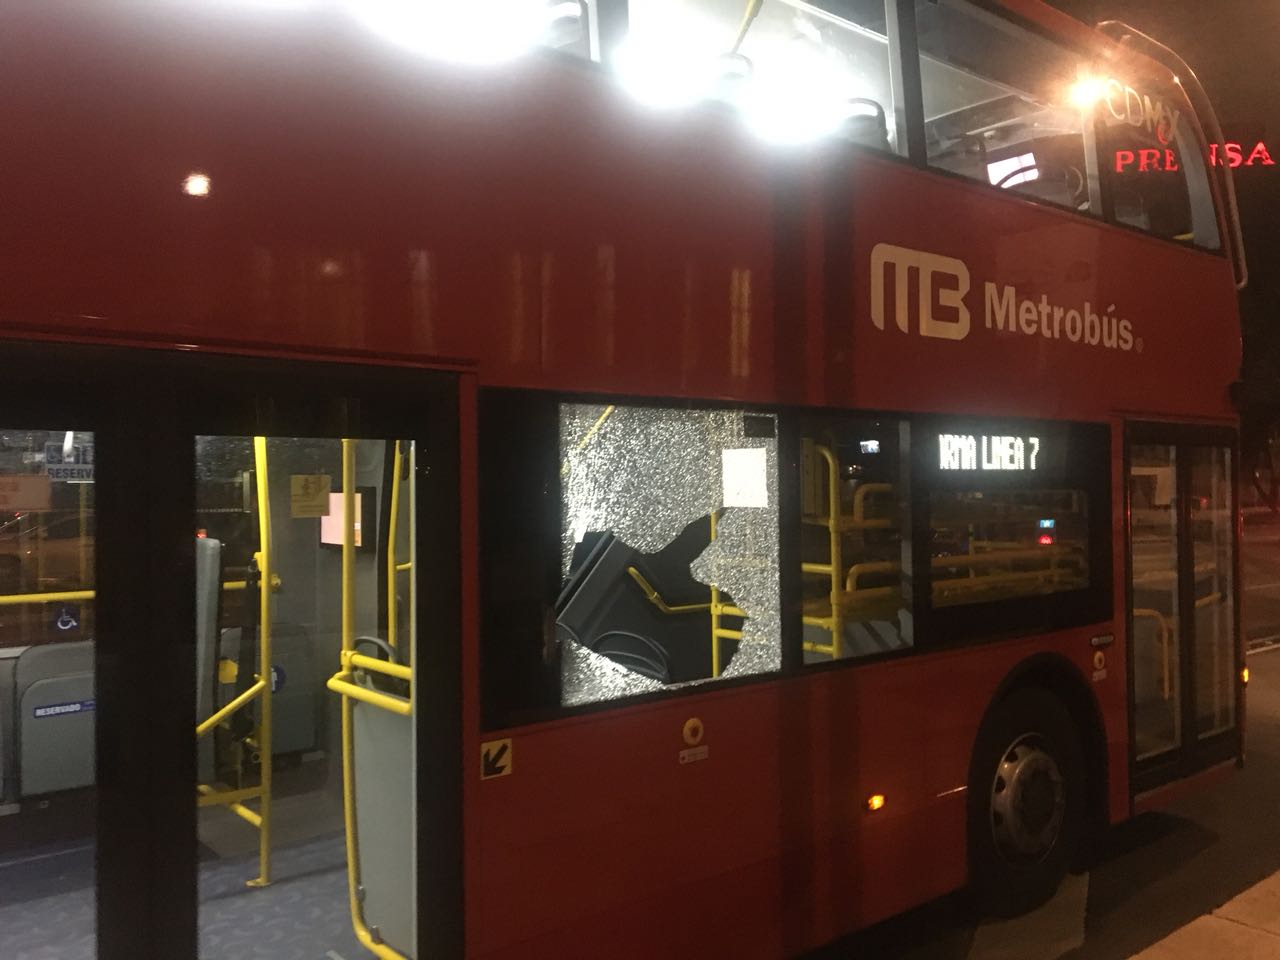 Golpean a Metrobús en Auditorio; le rompen ventana